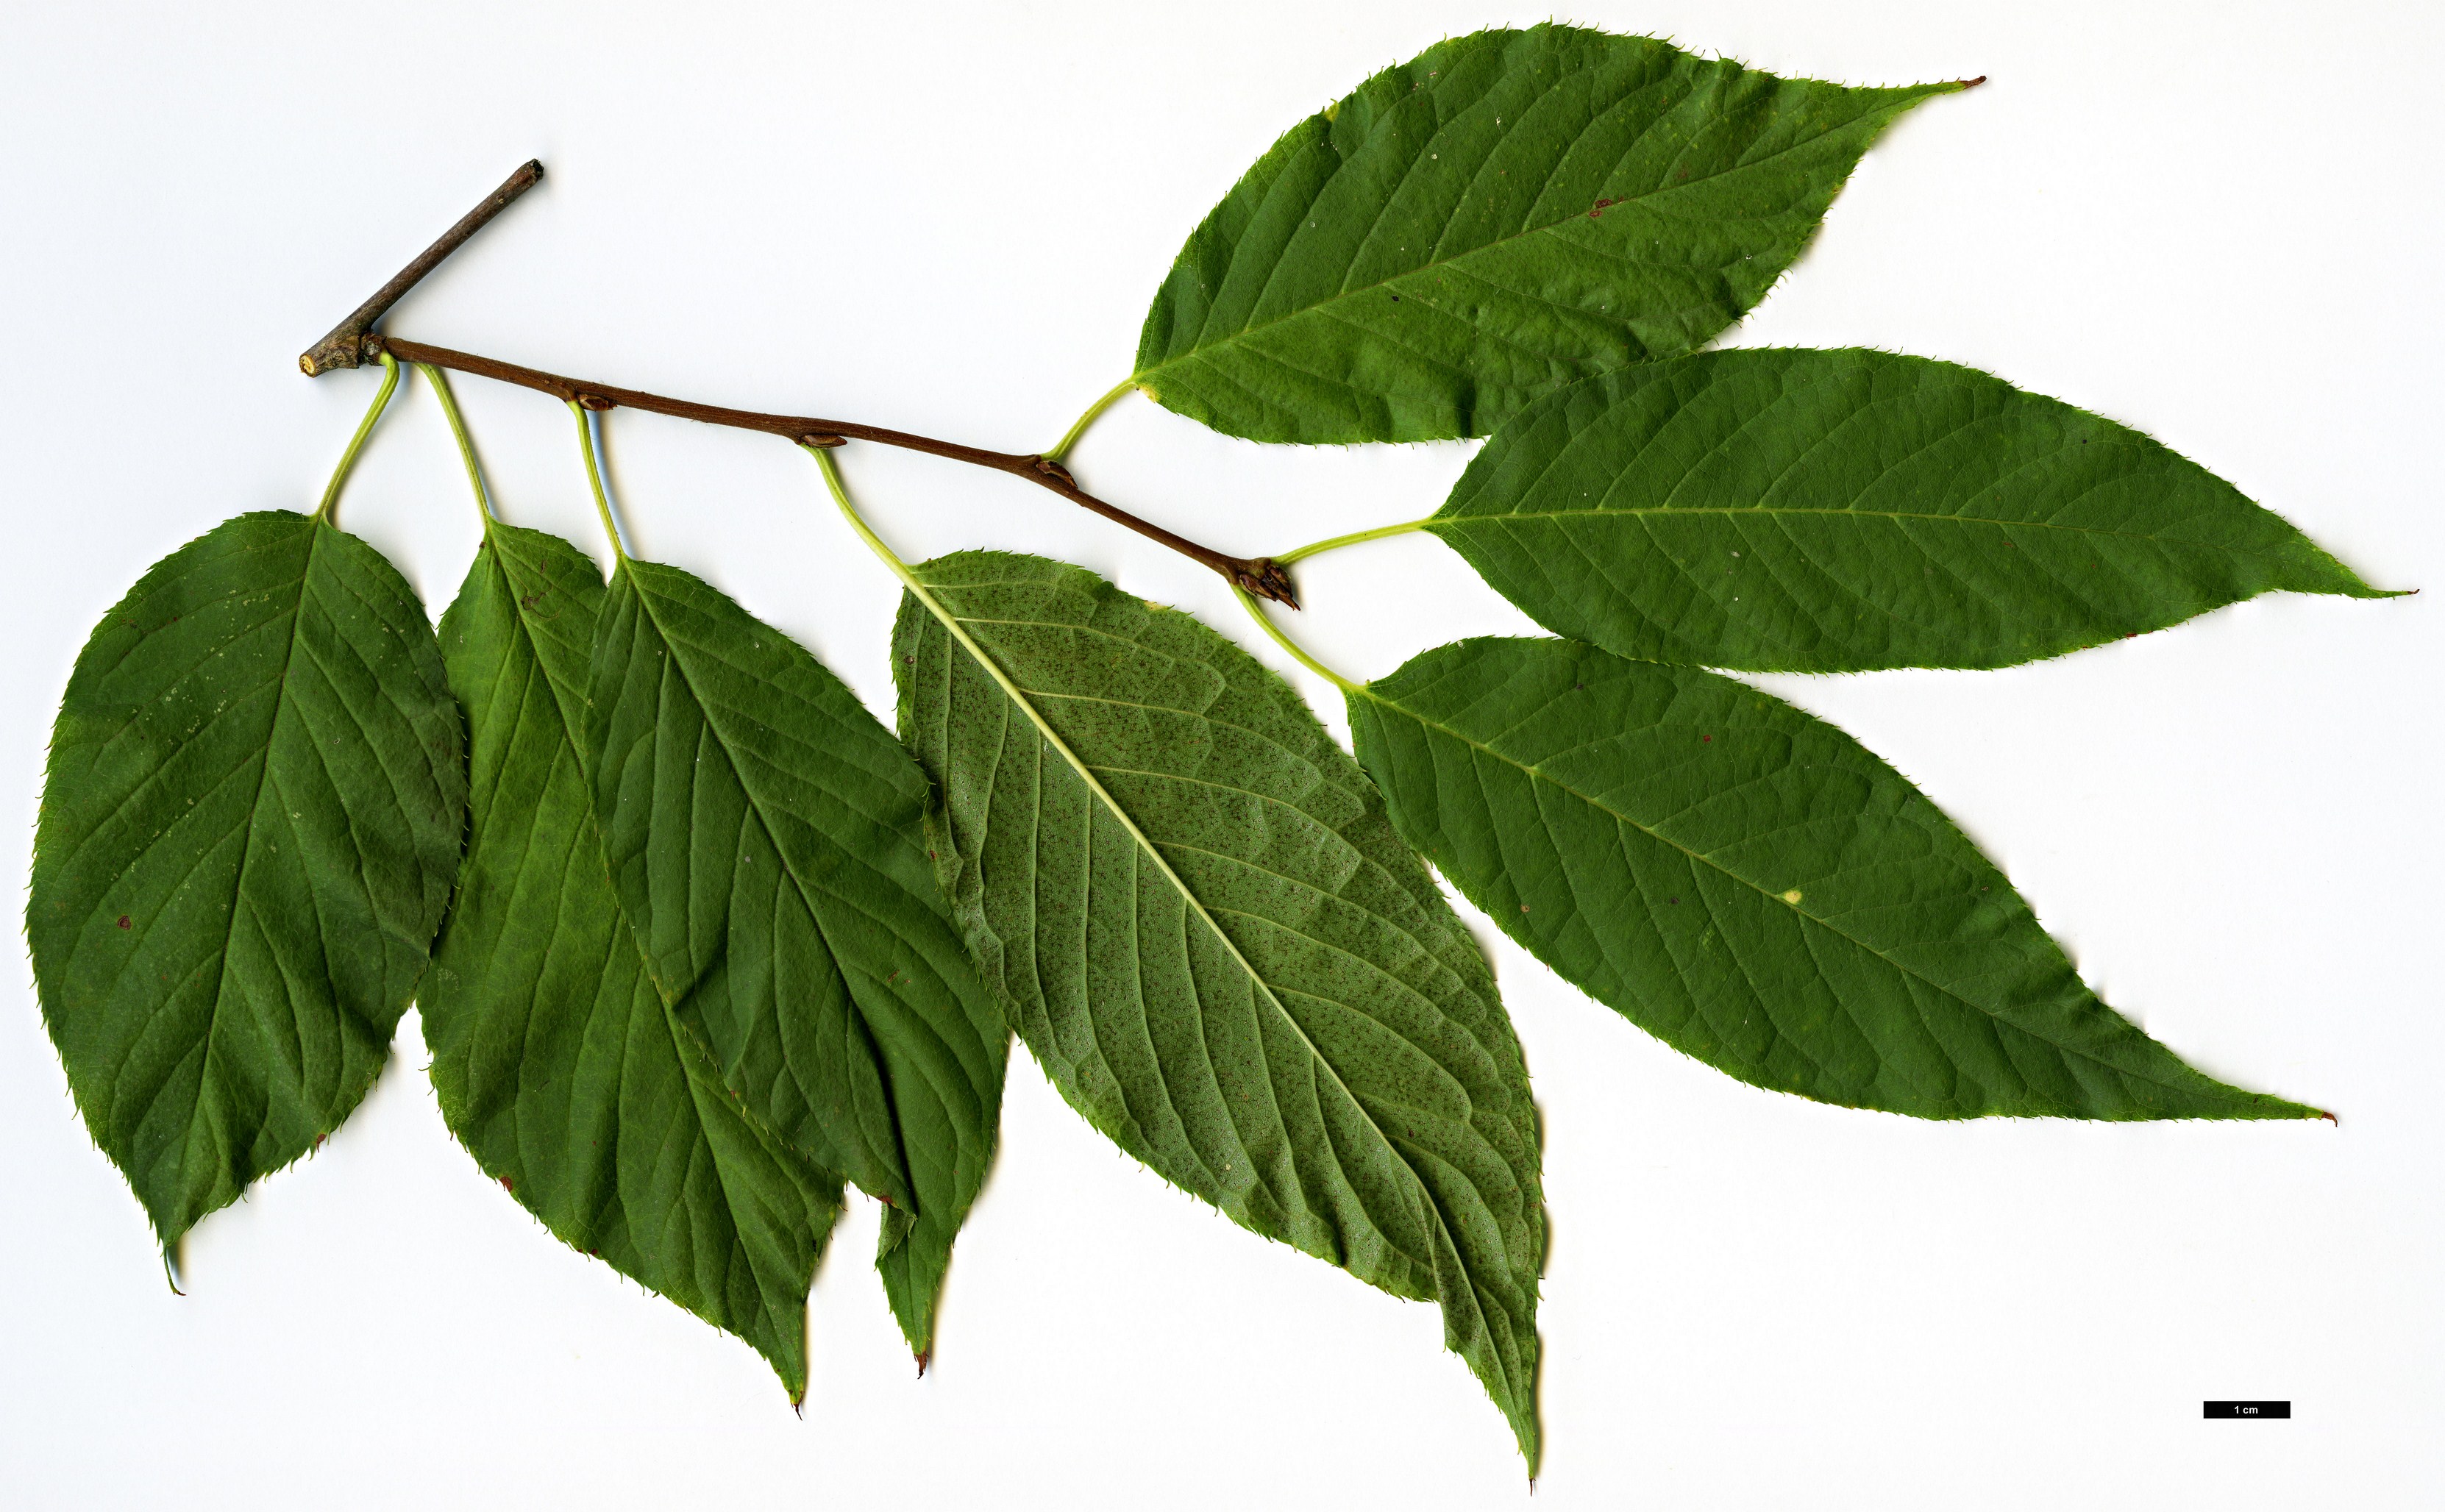 High resolution image: Family: Rosaceae - Genus: Prunus - Taxon: maackii